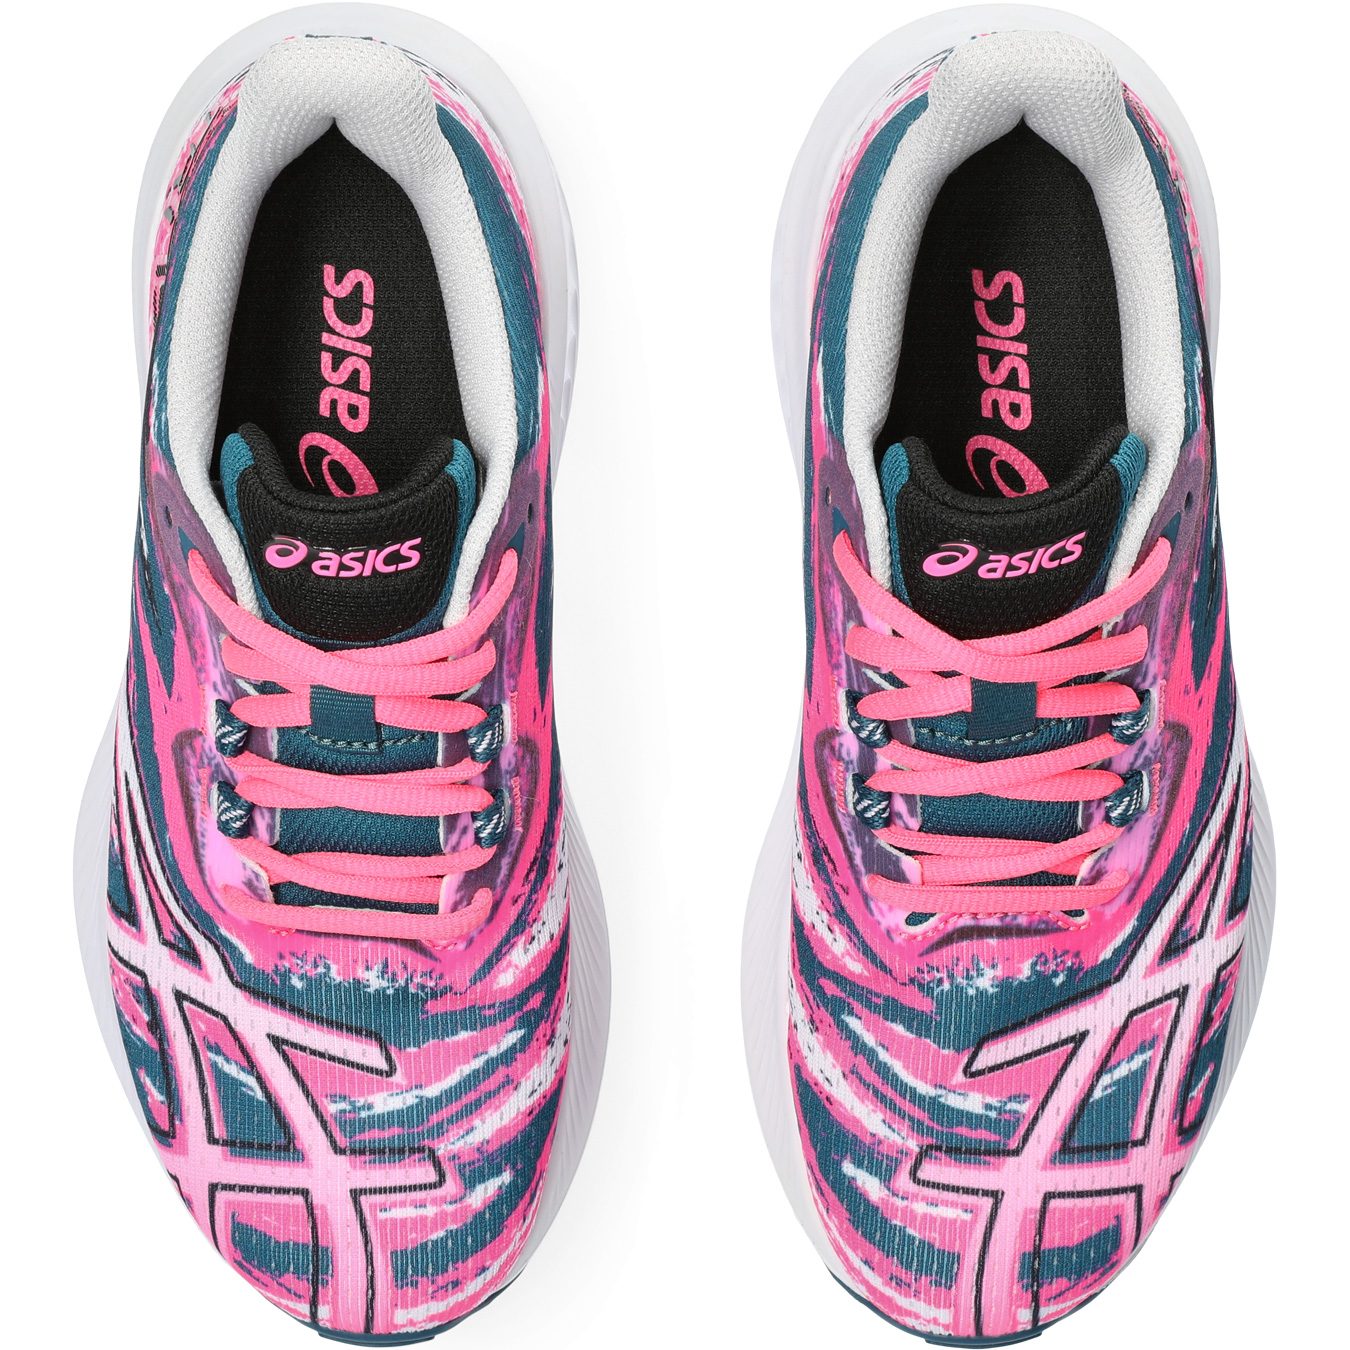 - Shop hot pink Shoes GS ASICS Running 15 Gel-Noosa Bittl TRI Kids Sport at